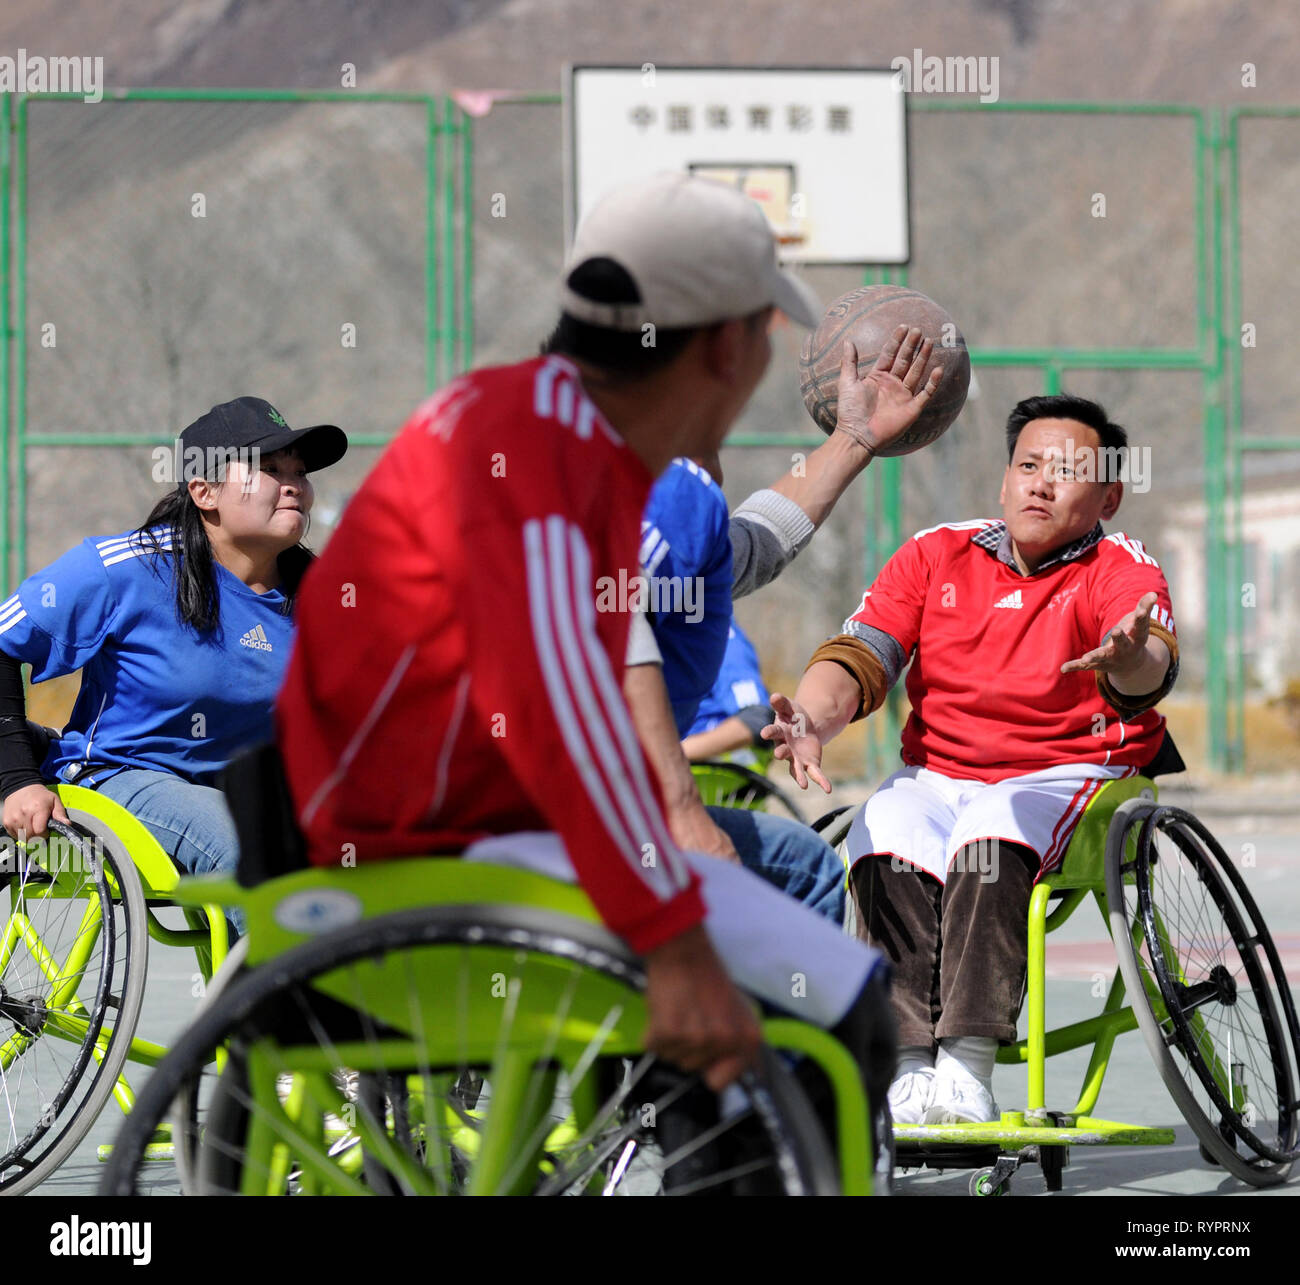 (190315) -- LHASA, Marzo 15, 2019 (Xinhua) -- i membri della Lhasa basket in carrozzella team competere durante una partita a Lhasa, capitale del sud-ovest della Cina di regione autonoma del Tibet, 3 marzo 2019. Sotto il caldo sole di marzo, chiudere gioco di basket attira un folto pubblico alla periferia di Lhasa, con giocatori di dribbling, tiro, passando, rubare e rimbalzano - nelle loro sedie a rotelle. 'Dash! Deyang!' Il pubblico viene eccitato e canta a voce alta. Il 21-anno-vecchia ragazza in blu usura, riprese la sua sedia a rotelle attraverso la corte dopo avere ottenuto un pass, e punteggi con un lay-up. Nato a Foto Stock